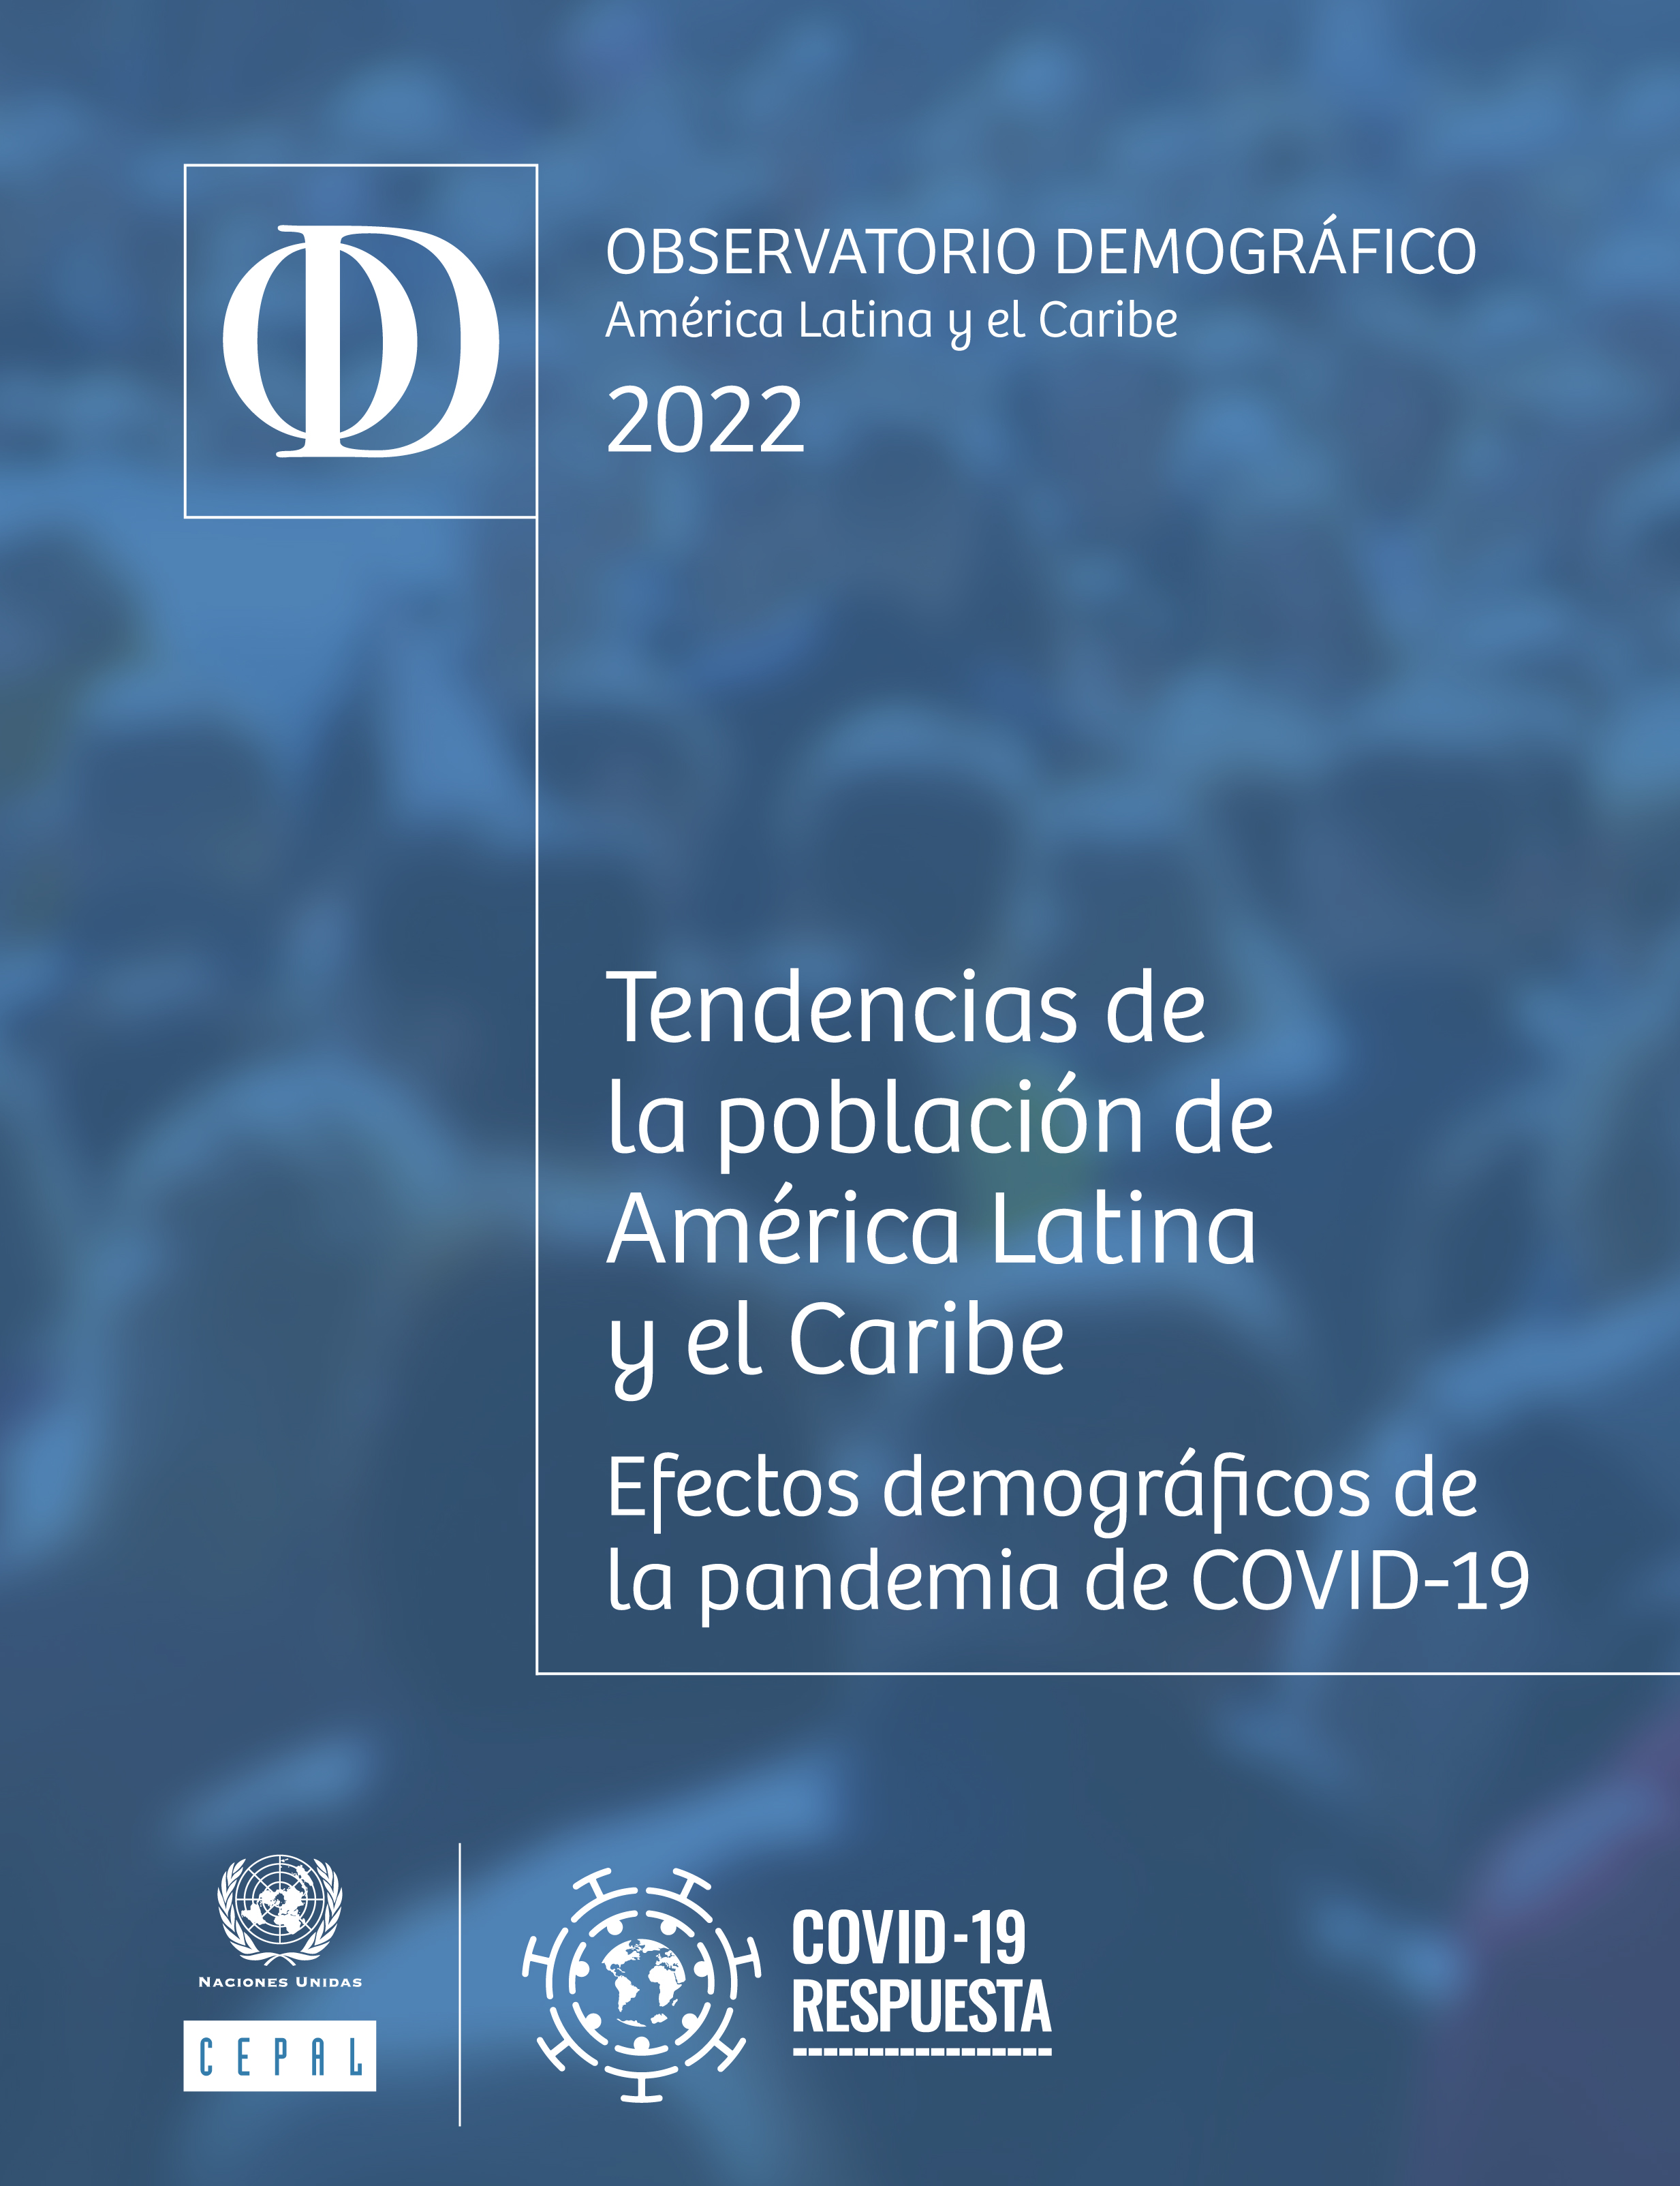 image of Observatorio Demográfico América Latina y el Caribe 2022